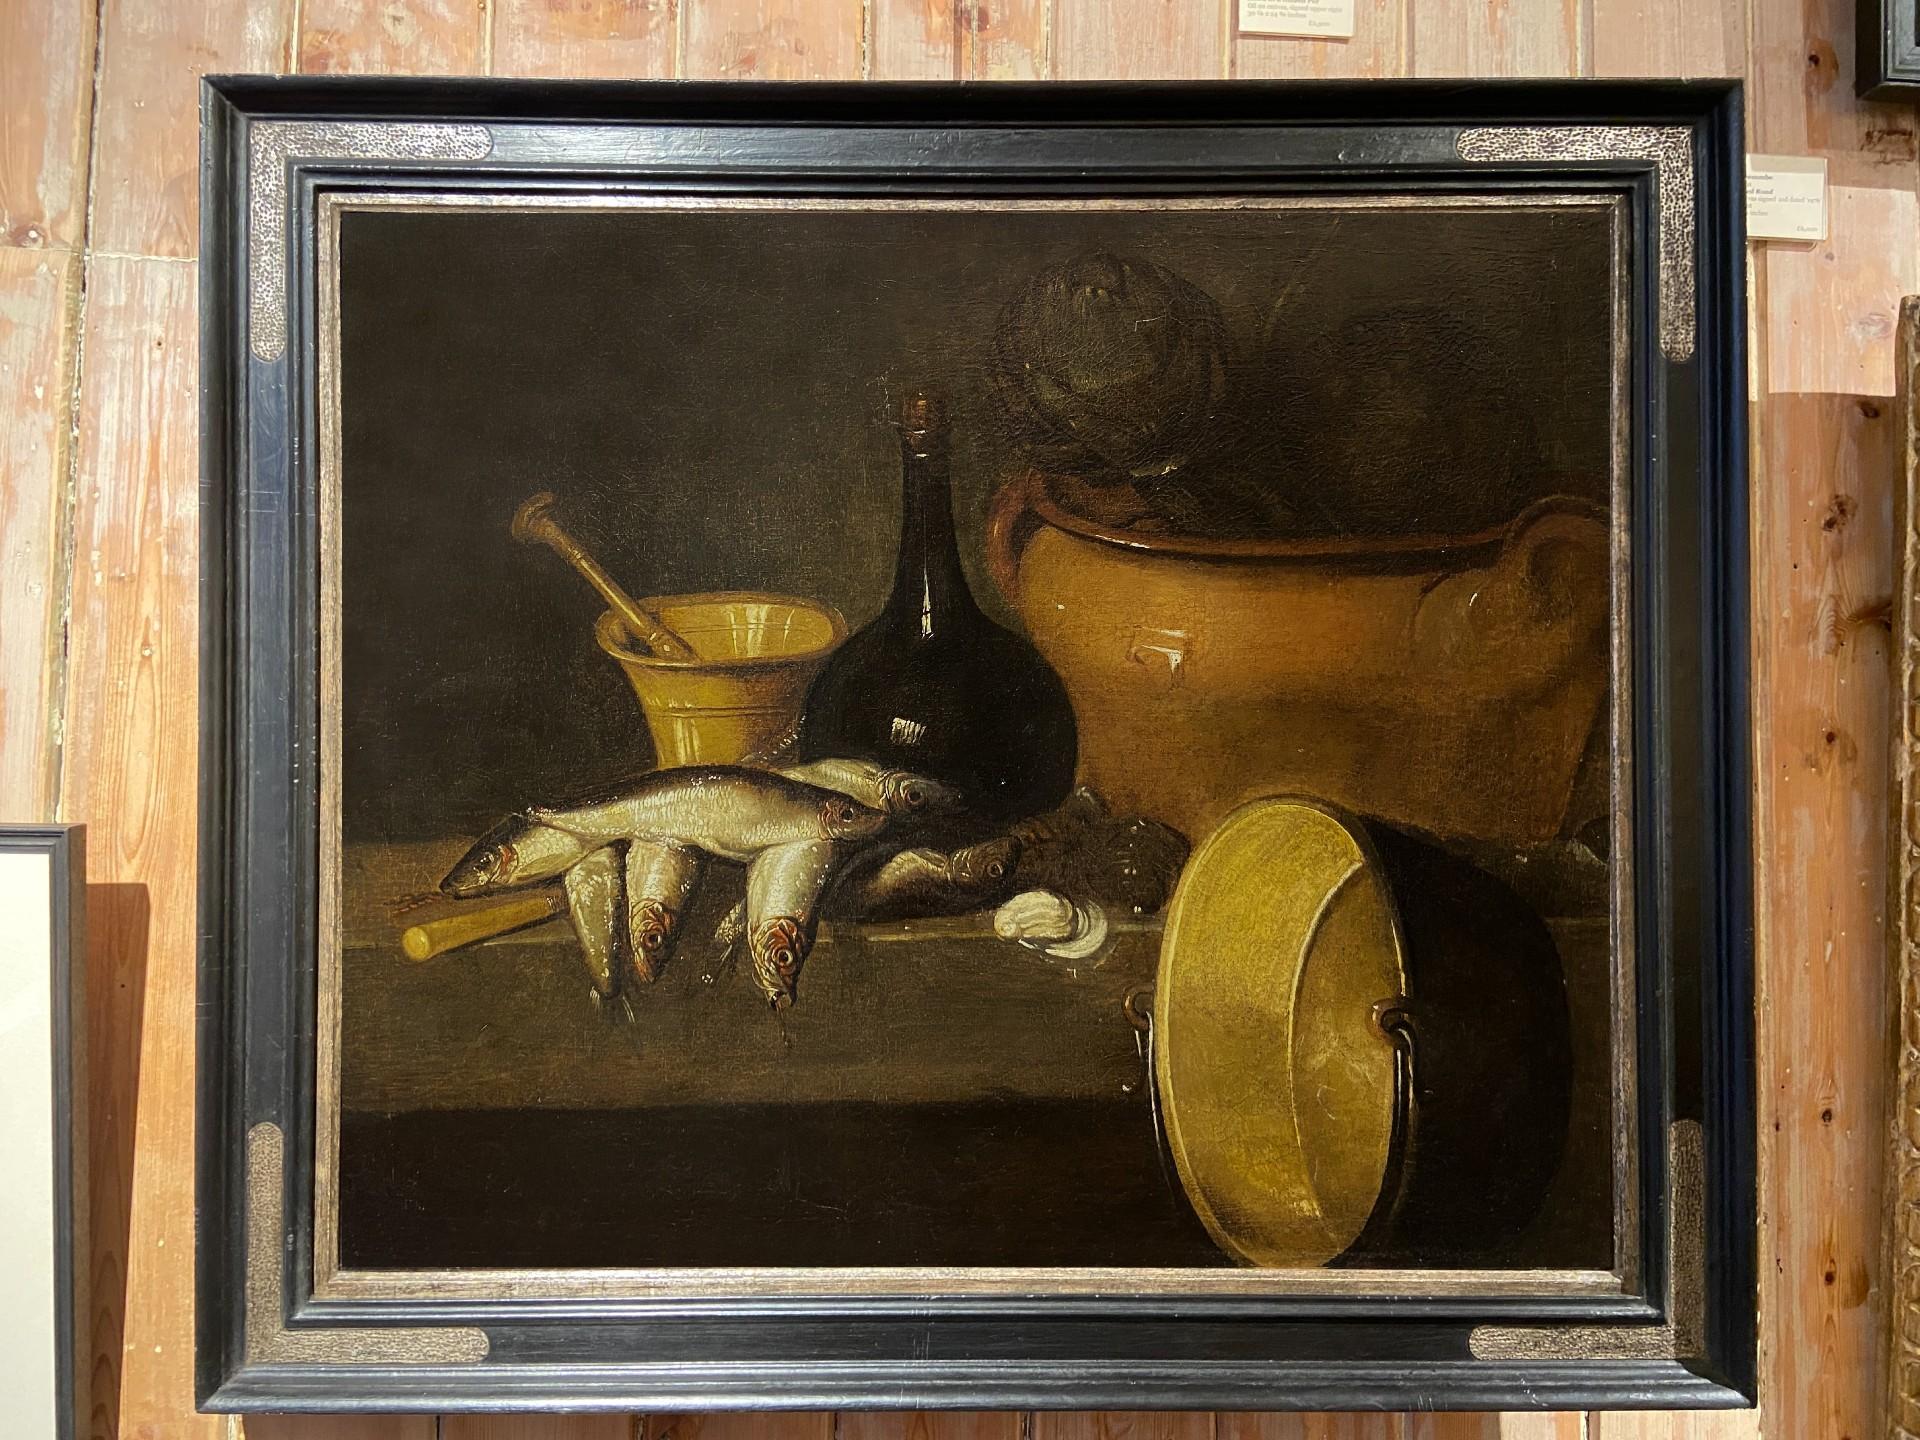 Stillleben mit Fisch und großem Kupfertopf, spanisches Gemälde des späten 18. Jahrhunderts – Painting von Spanish School